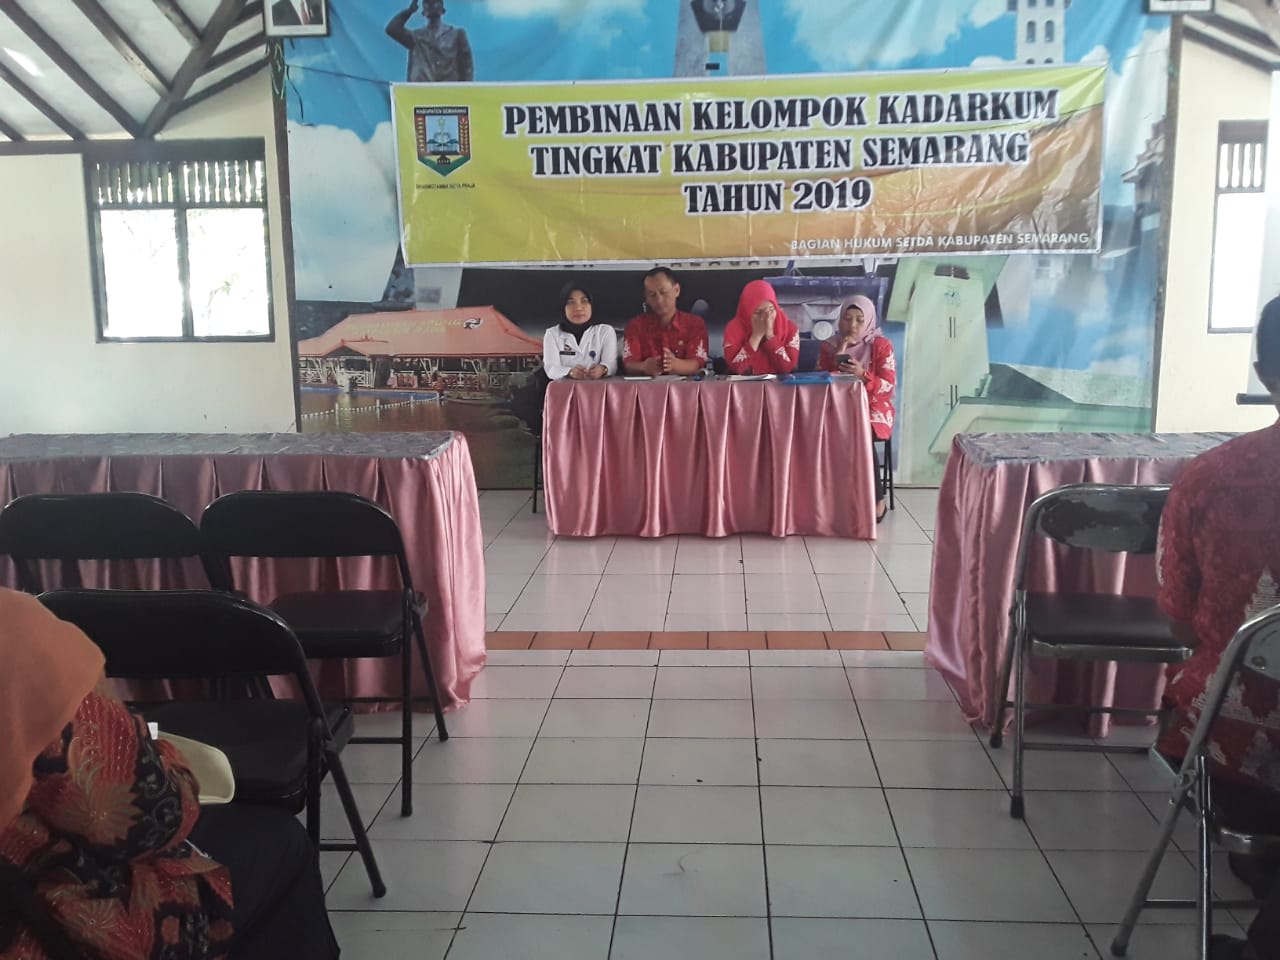 Pembinaan Kelompok Keluarga Sadar Hukum (KADARKUM) Di Kabupaten Semarang Tahun 2019